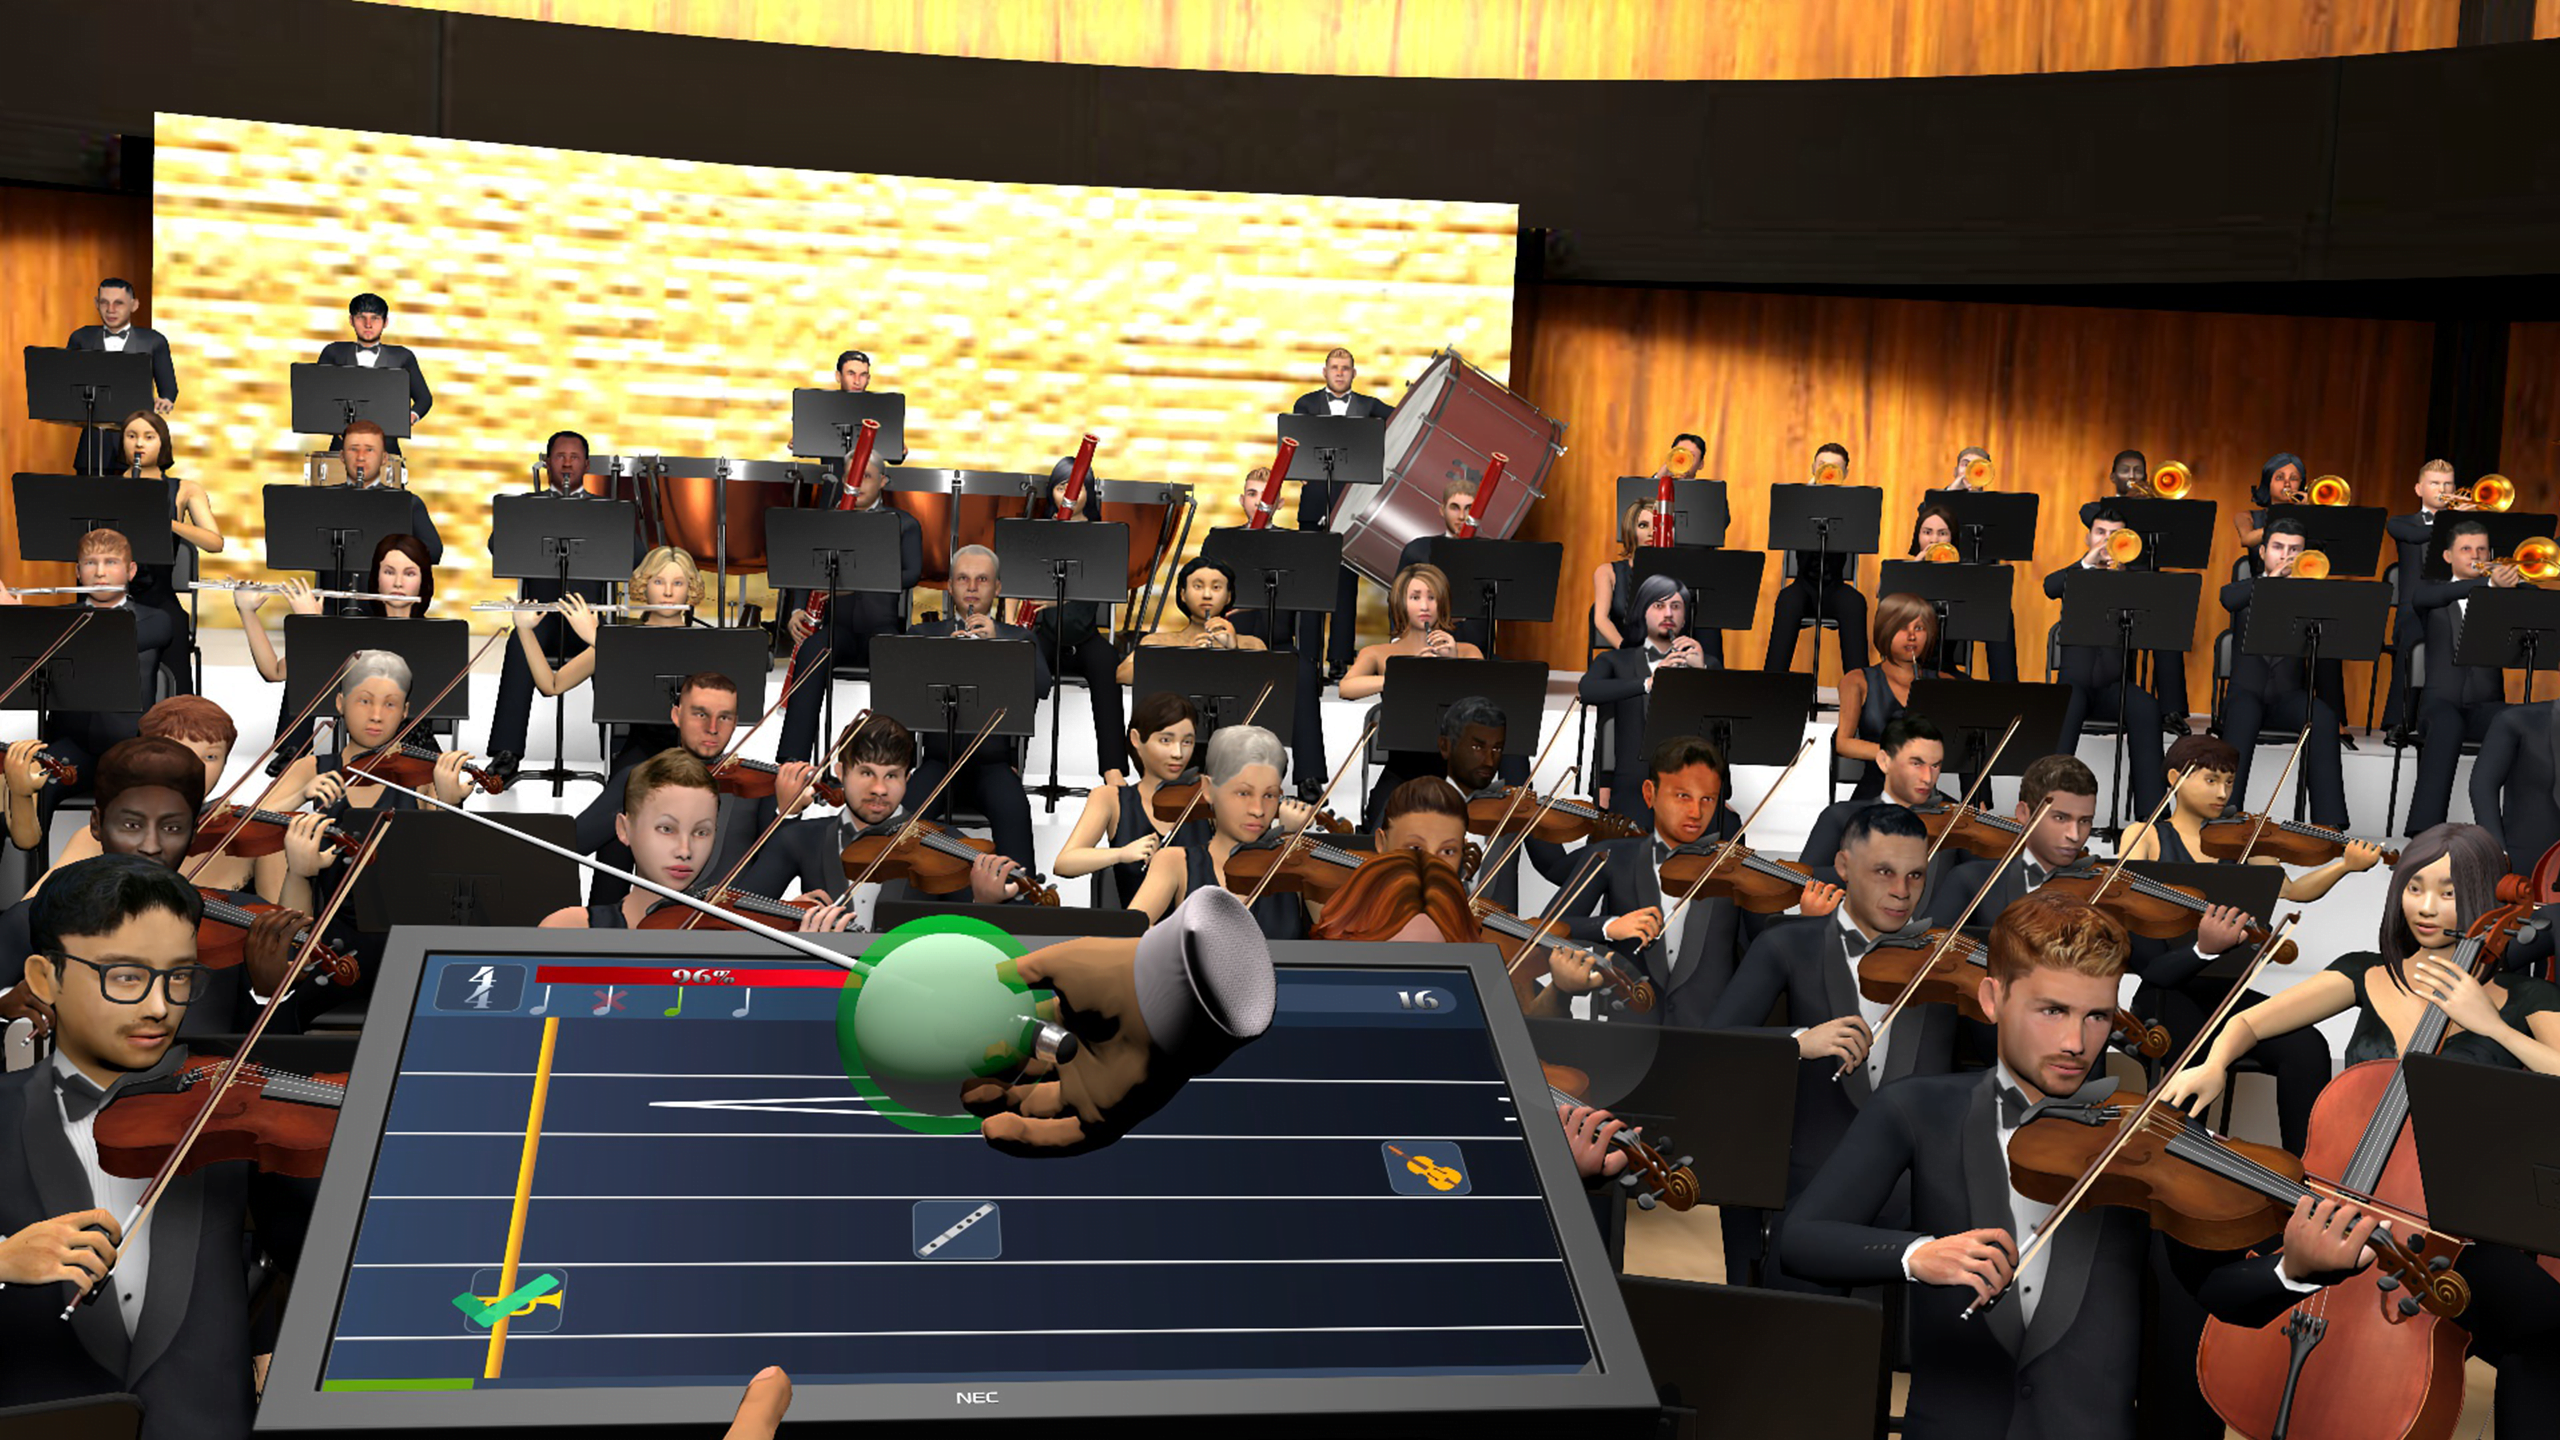 Dirigiert ein ganzes Orchester in Maestro VR